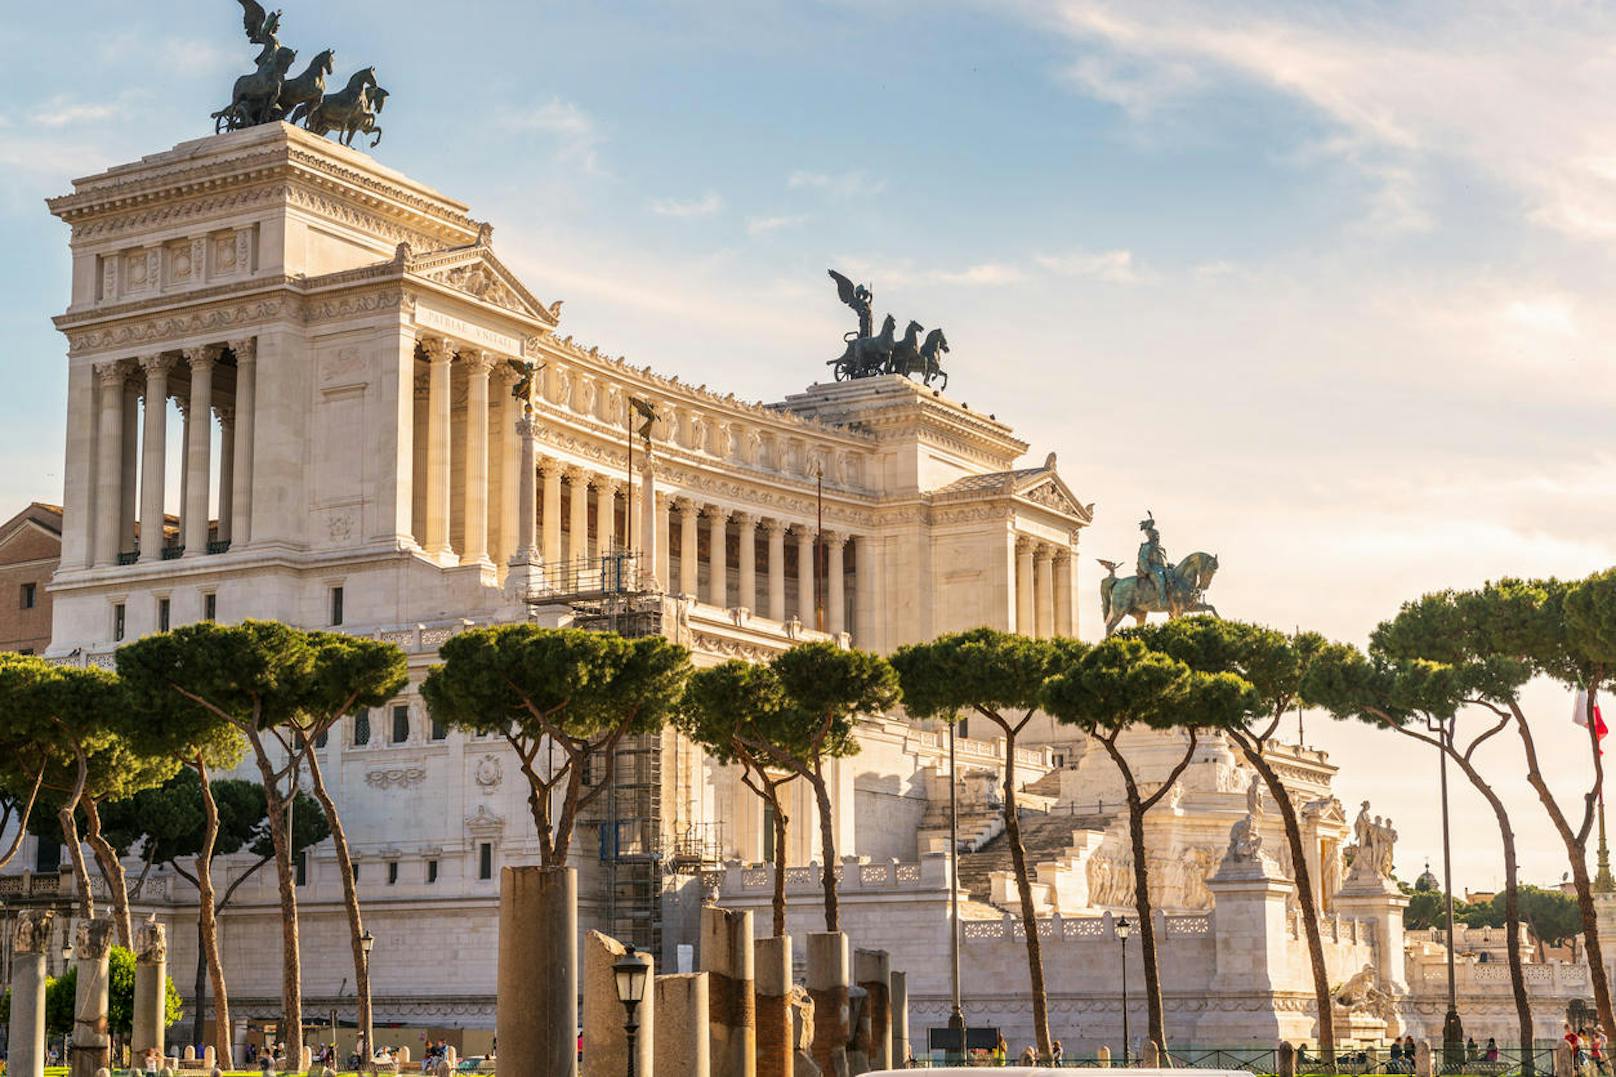 Panorama Terrasse - wer Rom einmal von oben sehen will, sollte das Viktor Emmanuell Denkmal besuchen. Die wenigsen wissen nämlich, dass es einen Aufzug zu einer Panorama-Terrasse gibt. Dort ist der perfekte Ort um ein Erinnerungsfoto zu machen!